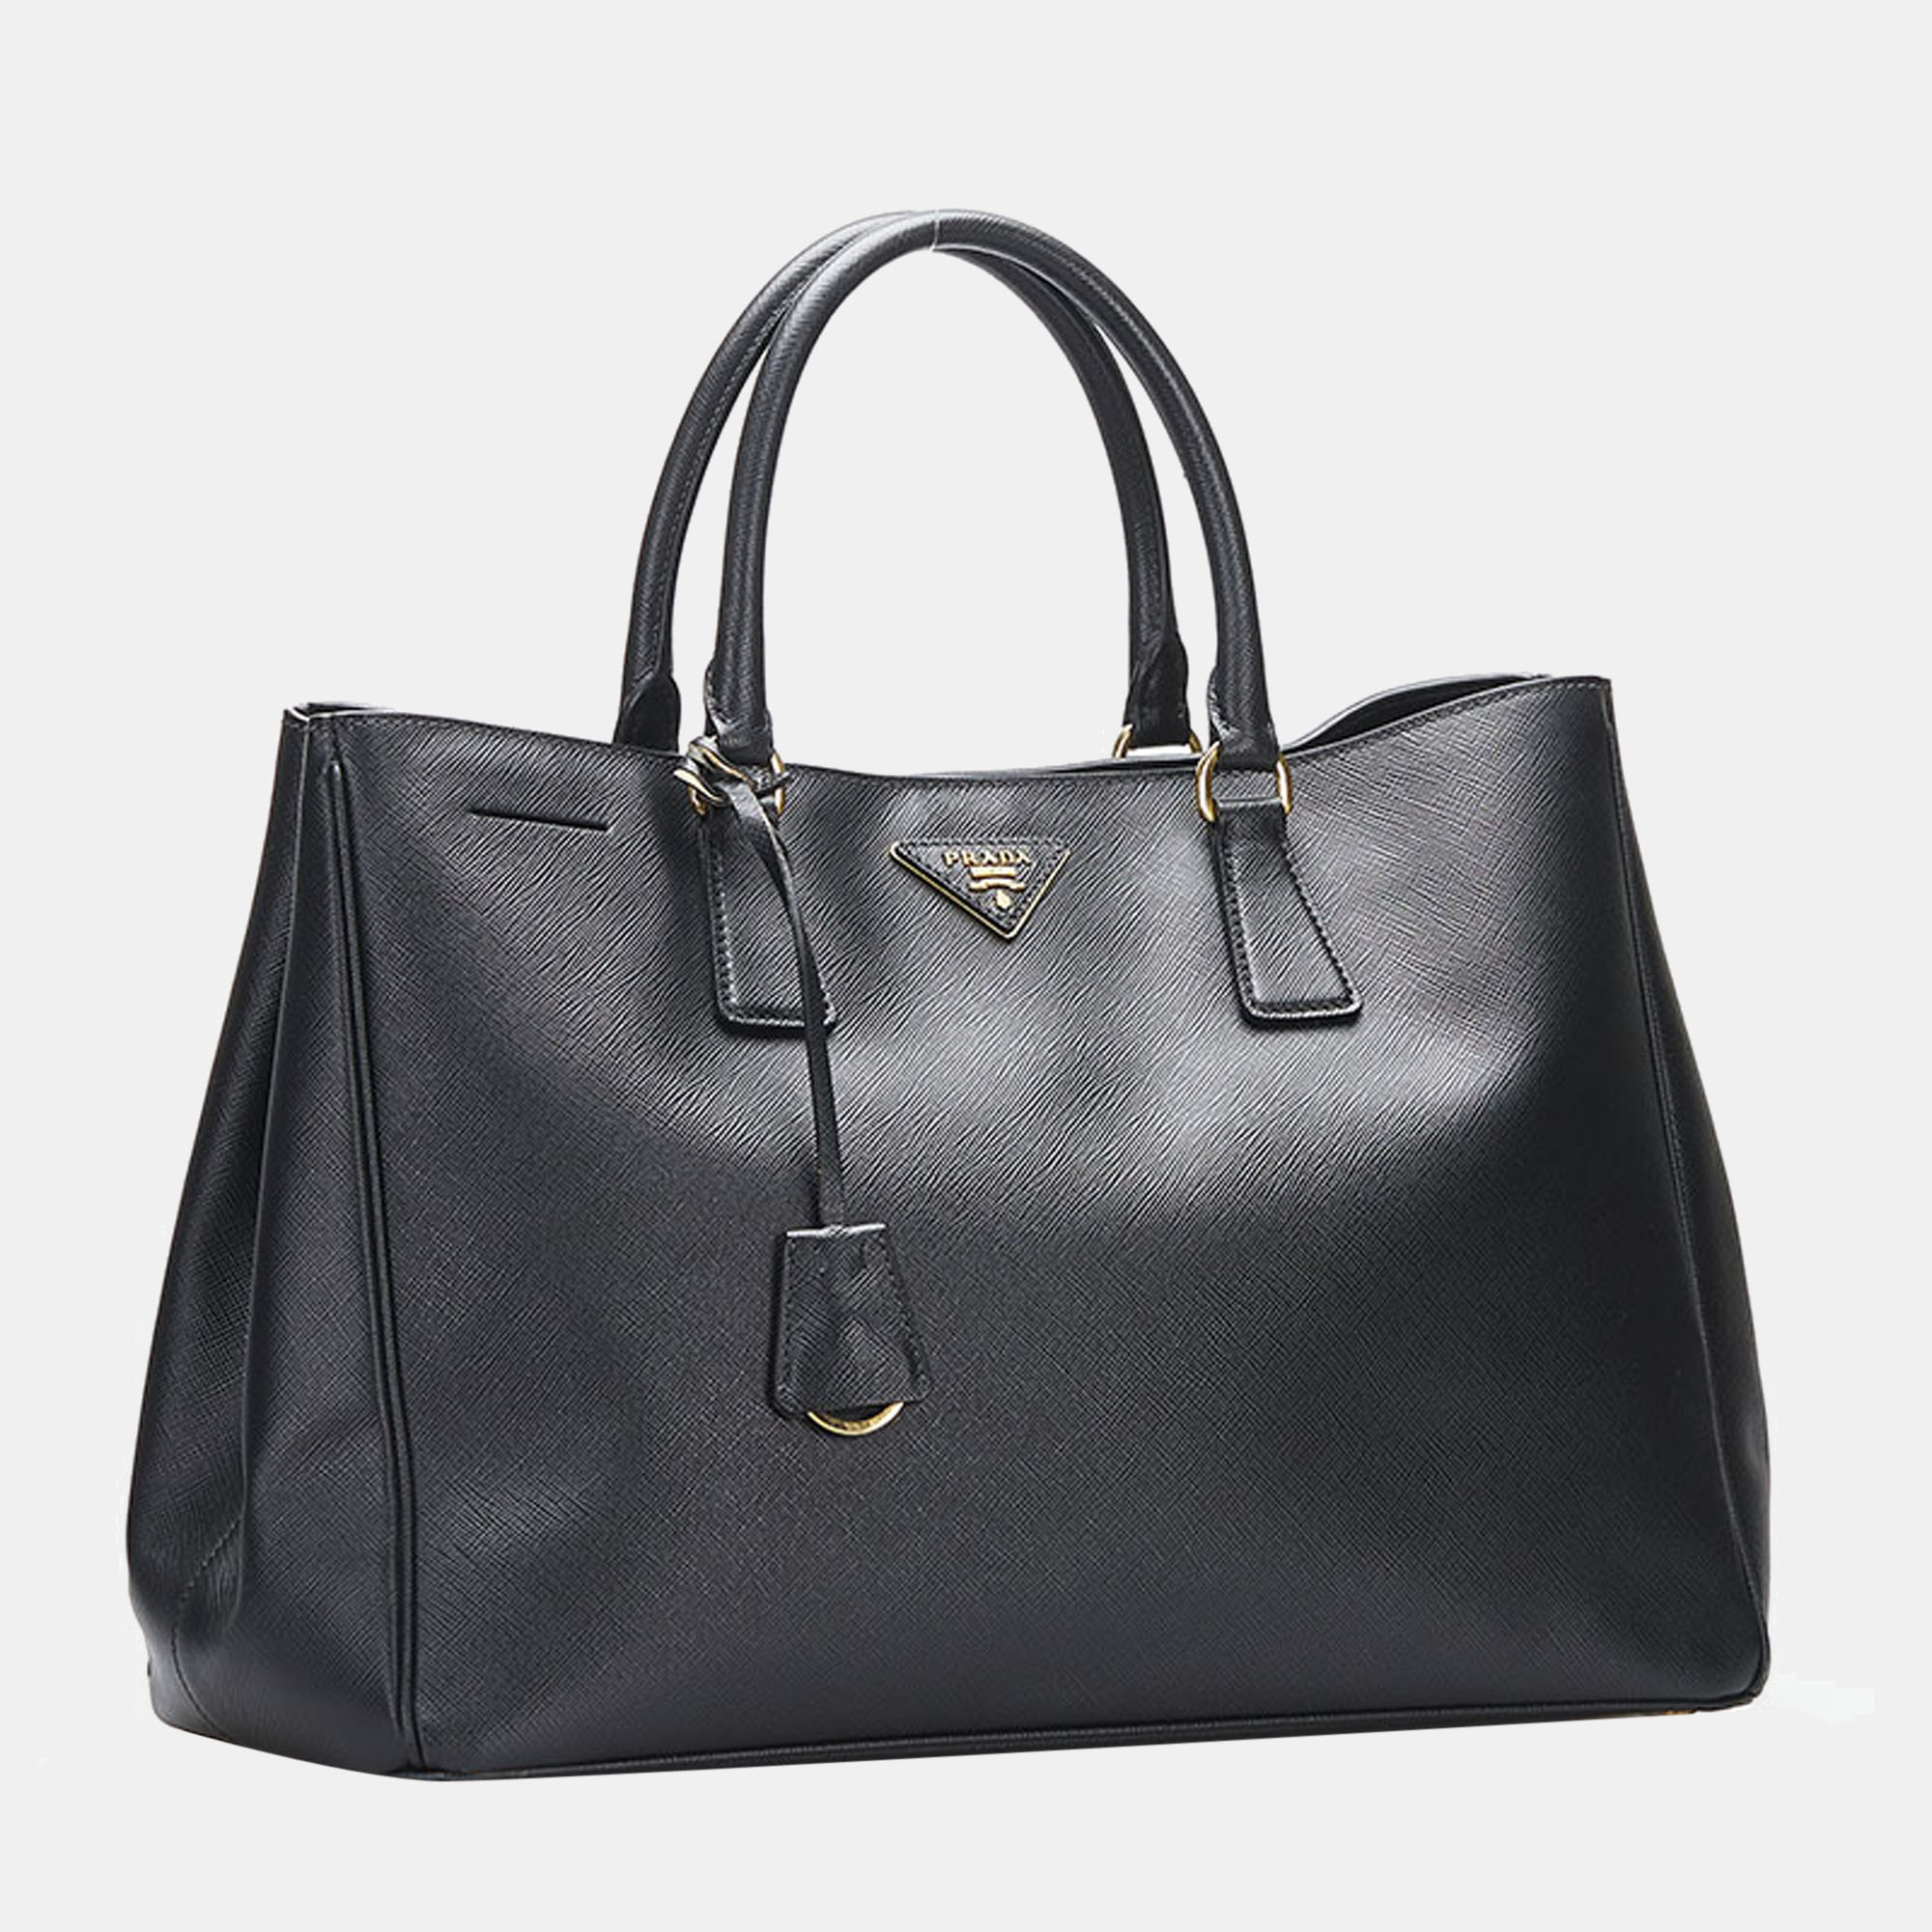 

Prada Black Leather Medium Saffiano Lux Galleria Double Zip Tote Bag